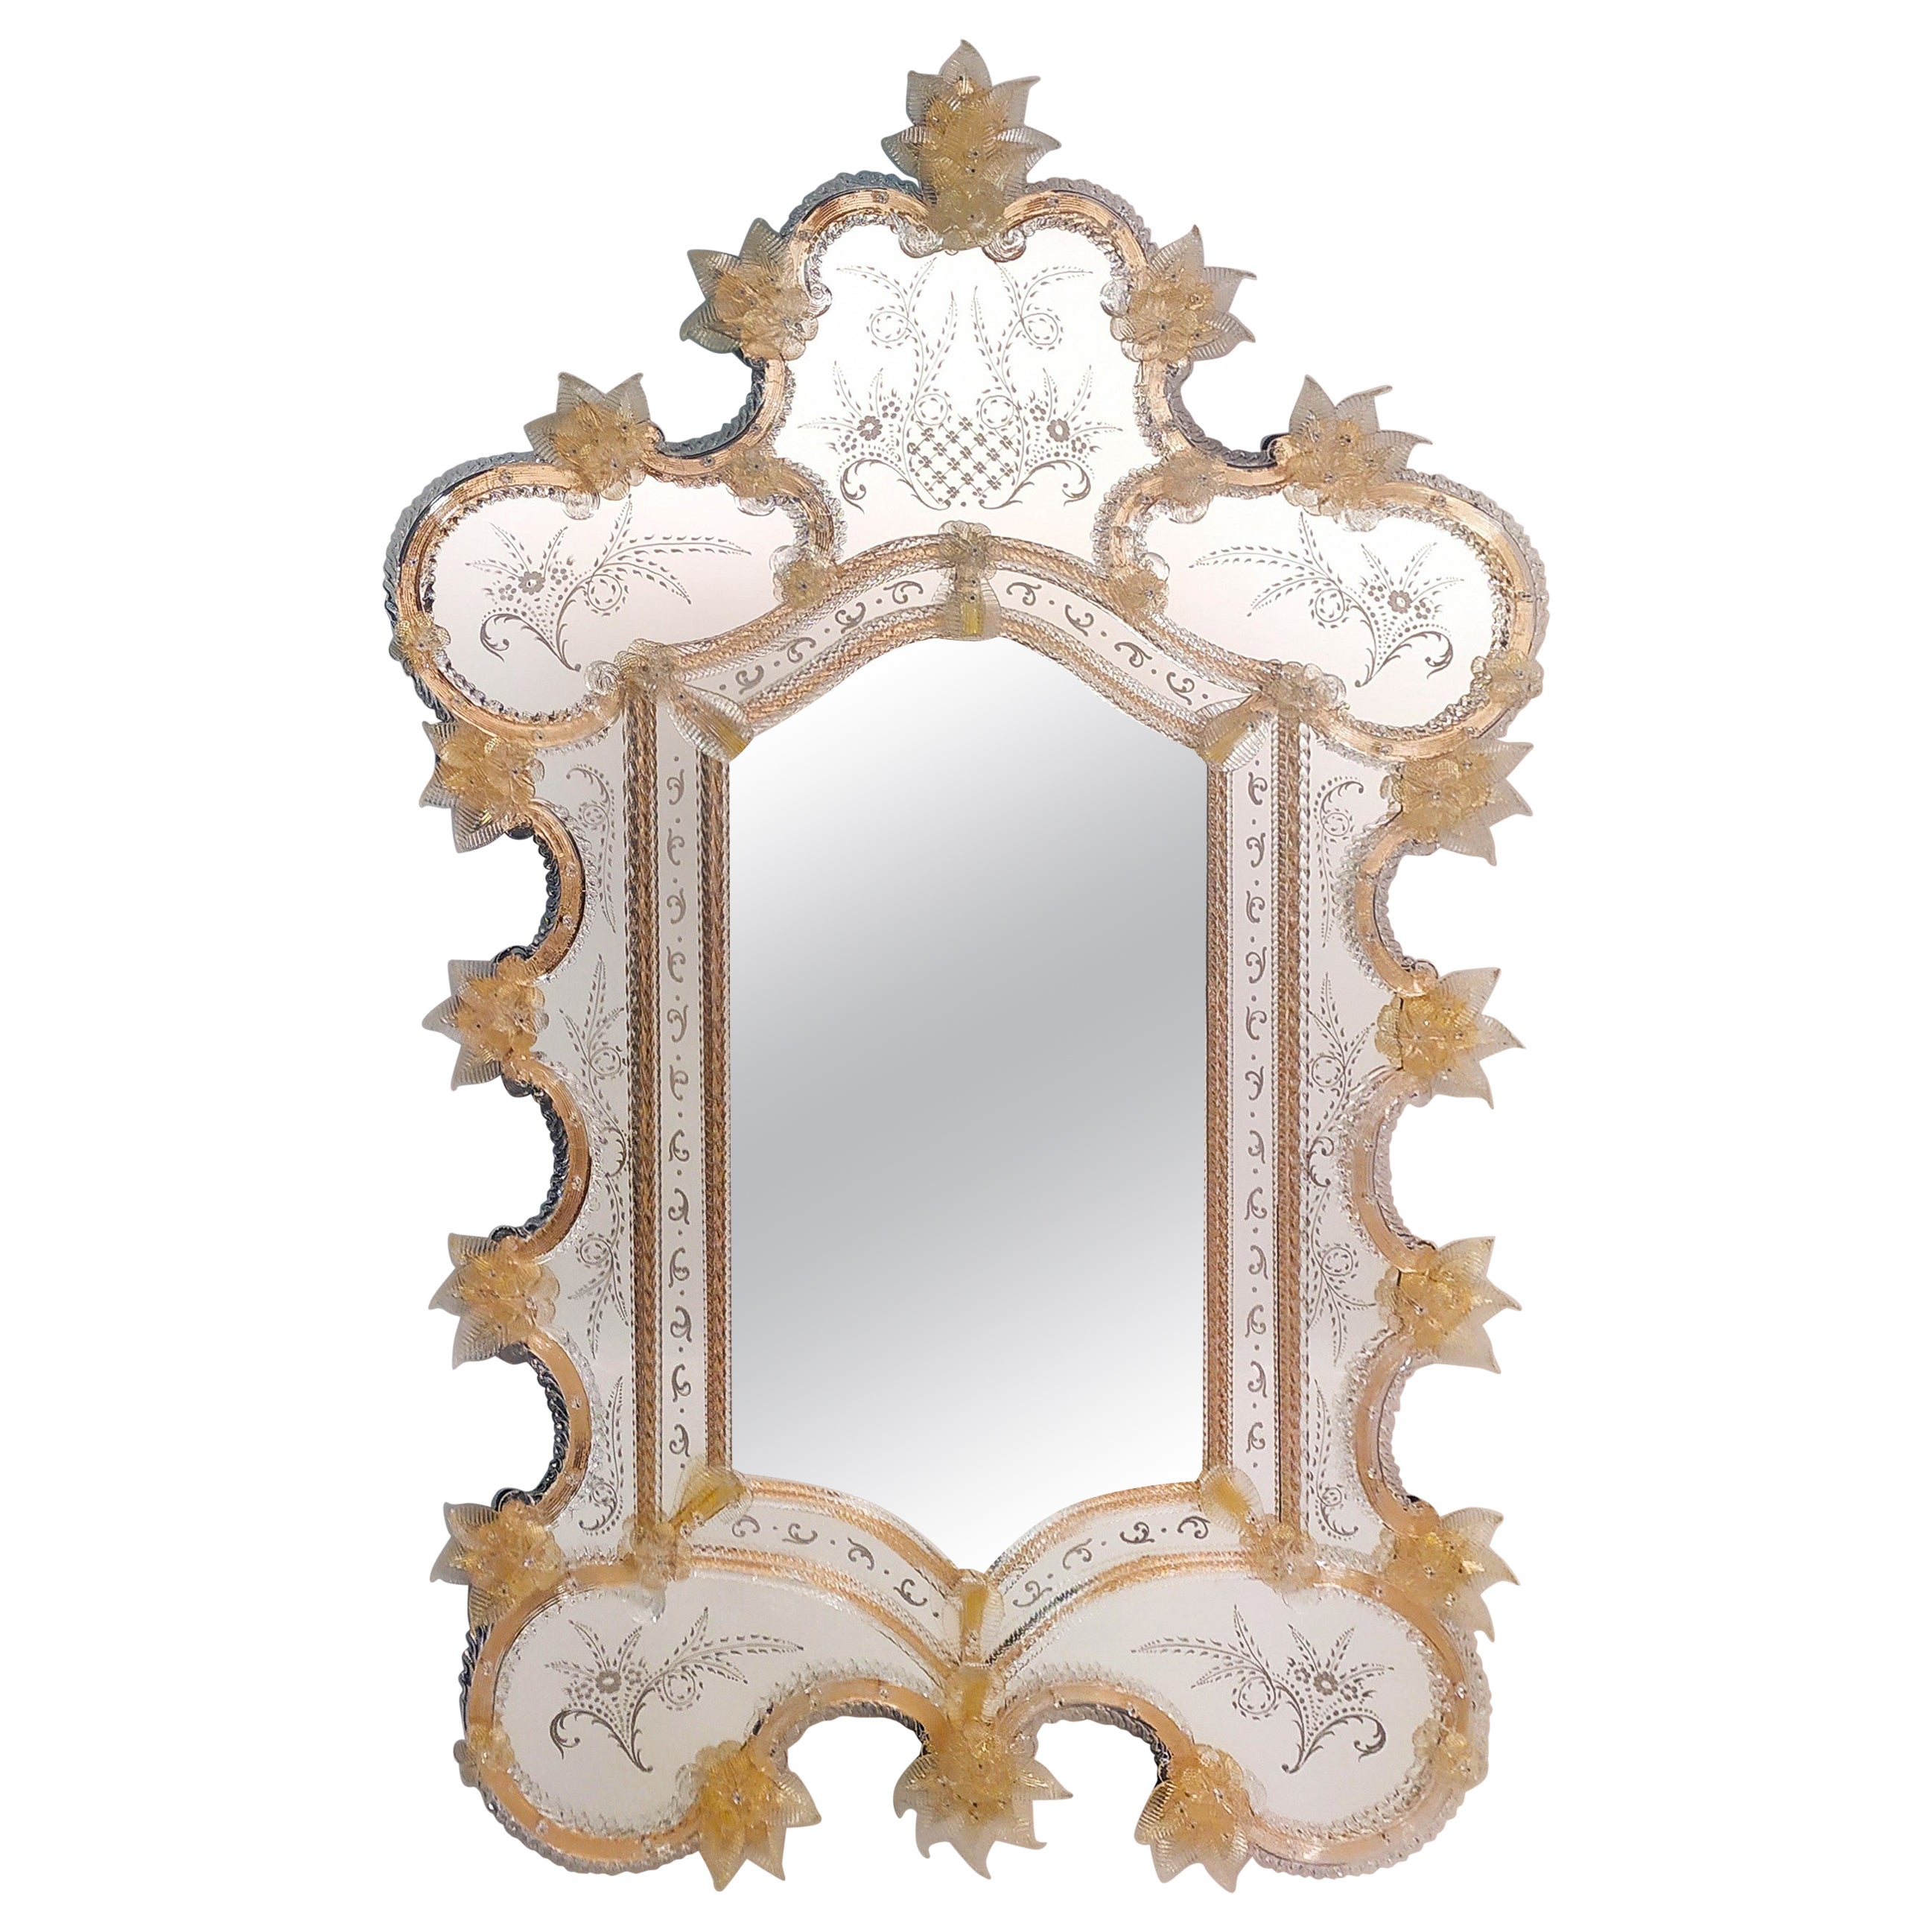 "Frari" Specchio Veneziano in Vetro di Murano by Fratelli Tosi Murano